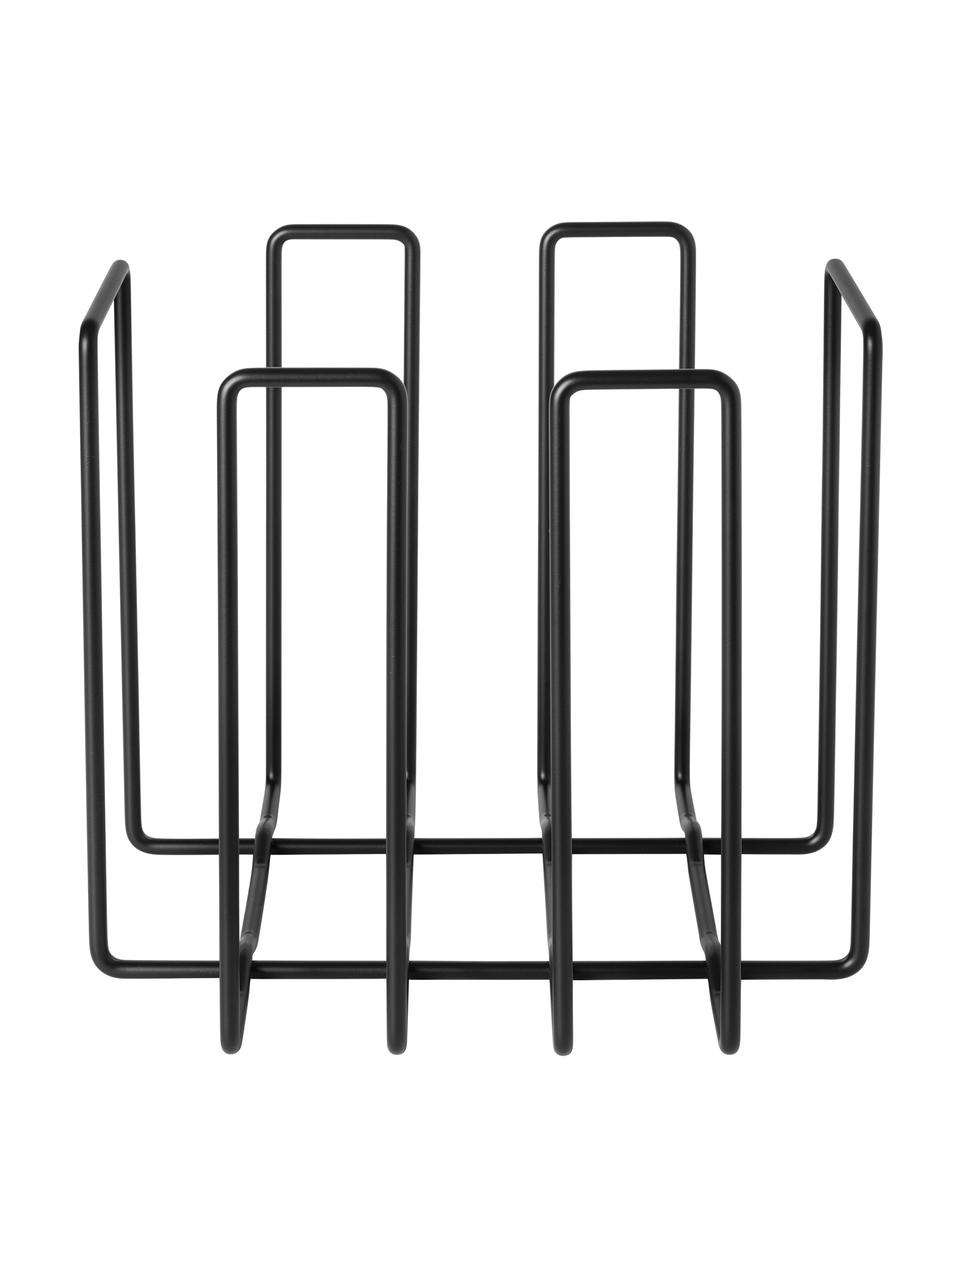 Stojak na czasopisma Wires, Metal, Czarny, S 34 x W 31 cm